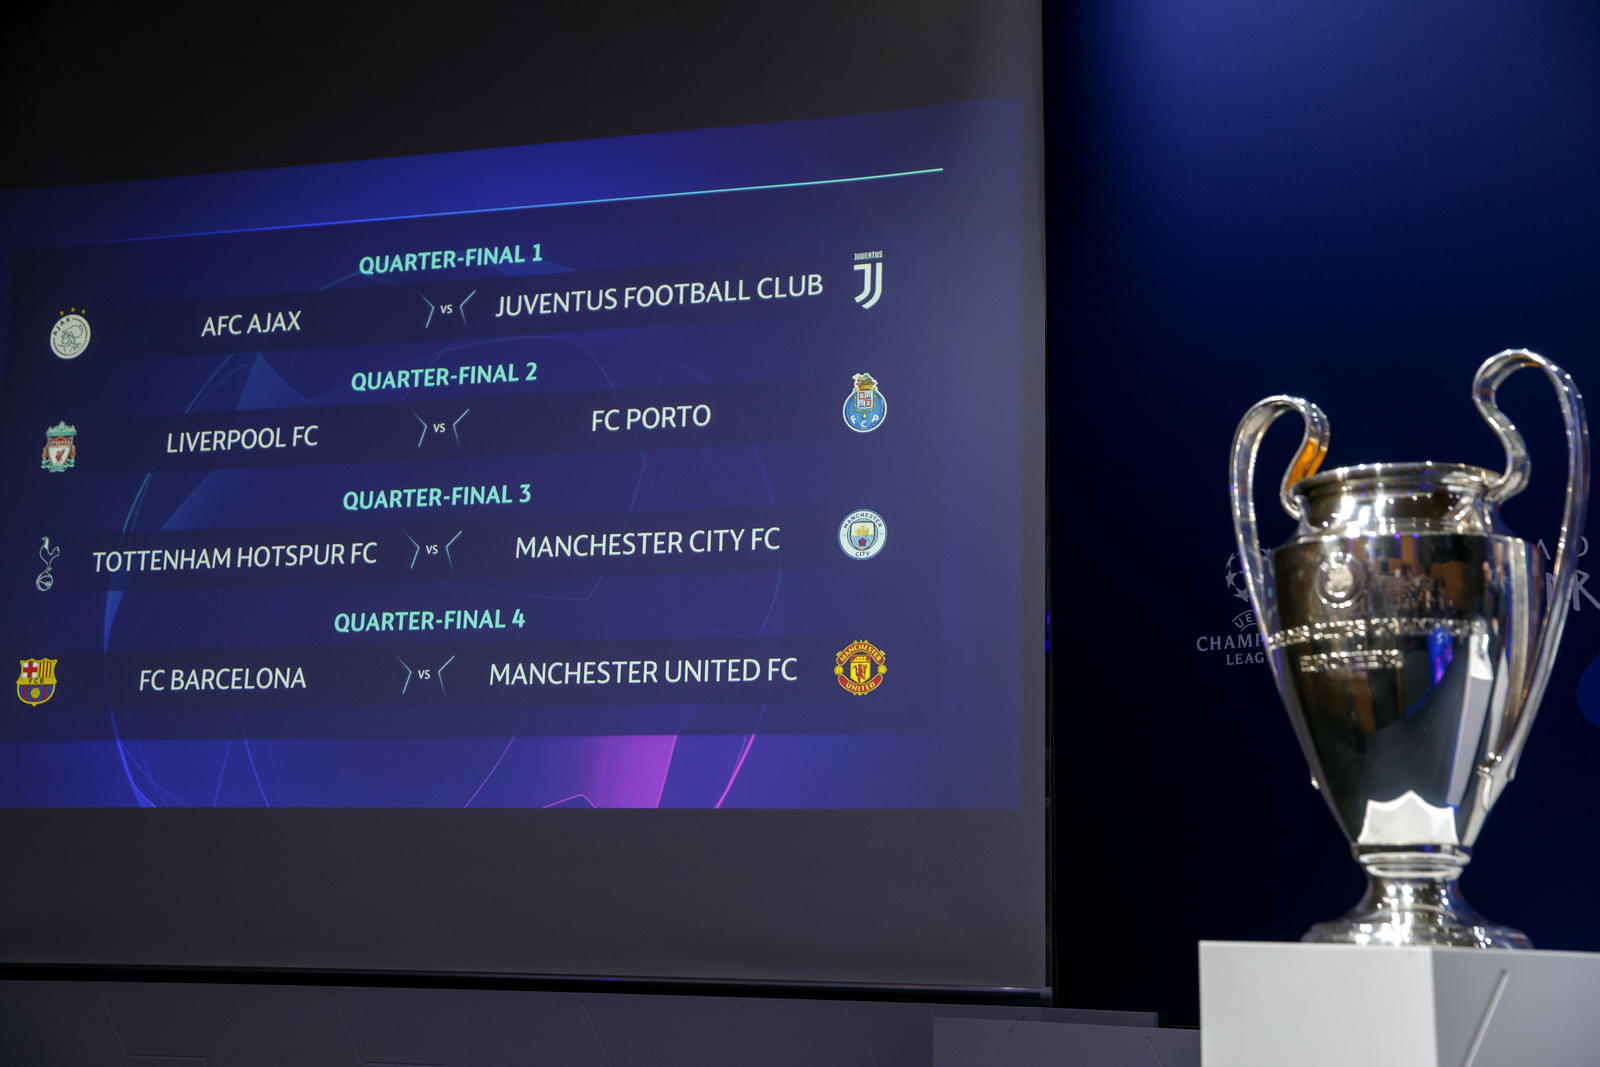 Estos serán los cruces por los cuartos de final de la UEFA Champions League que se reanudará mañana con dos trepidantes duelos.